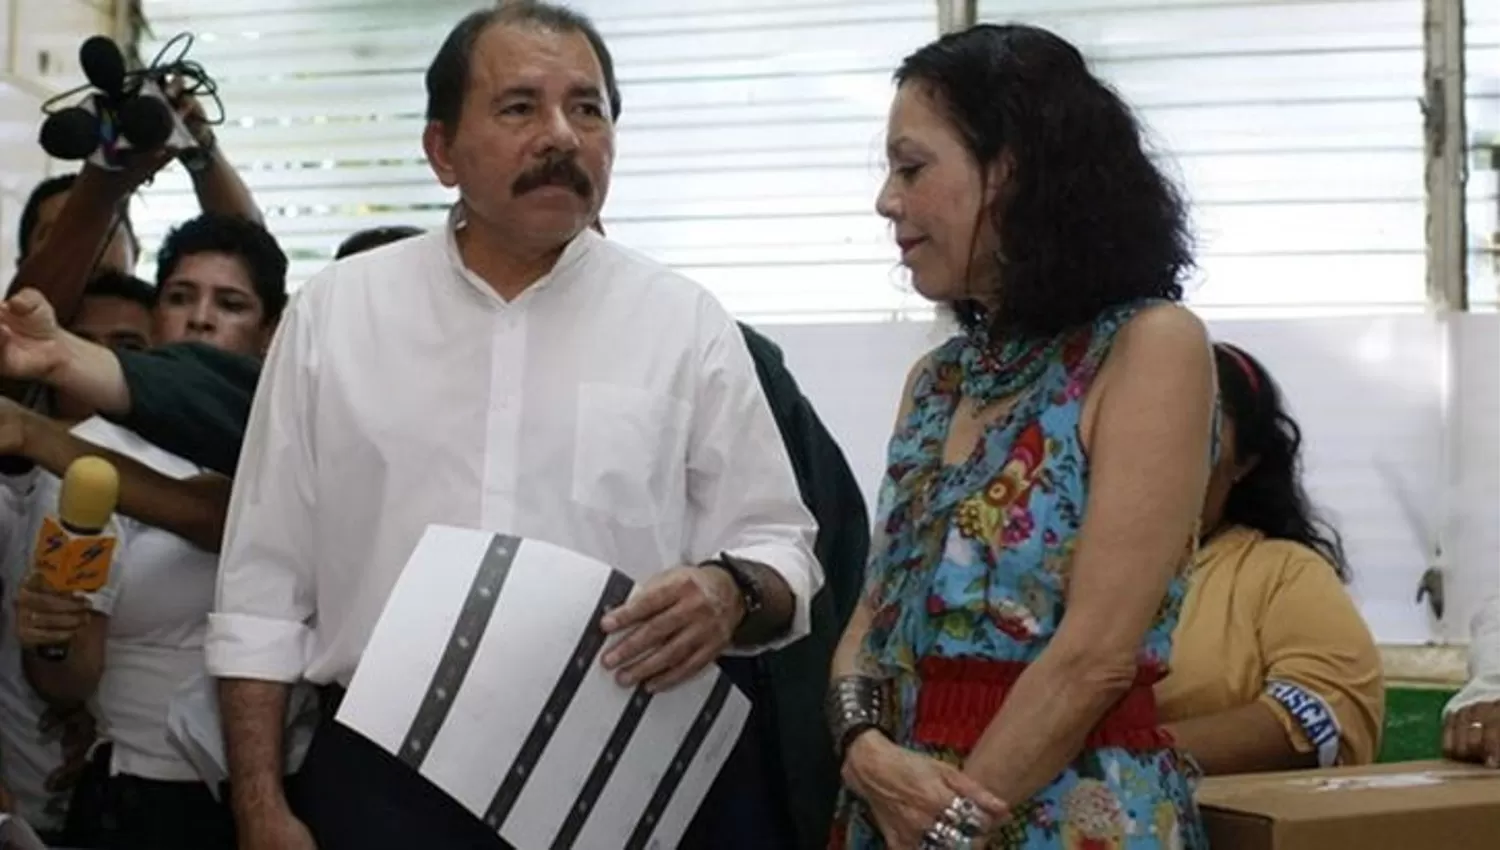 CUESTIONADOS. Ortega y Murillo conducen desde 2007 los destinos de Nicaragua, ante la desconfianza de Estados Unidos.